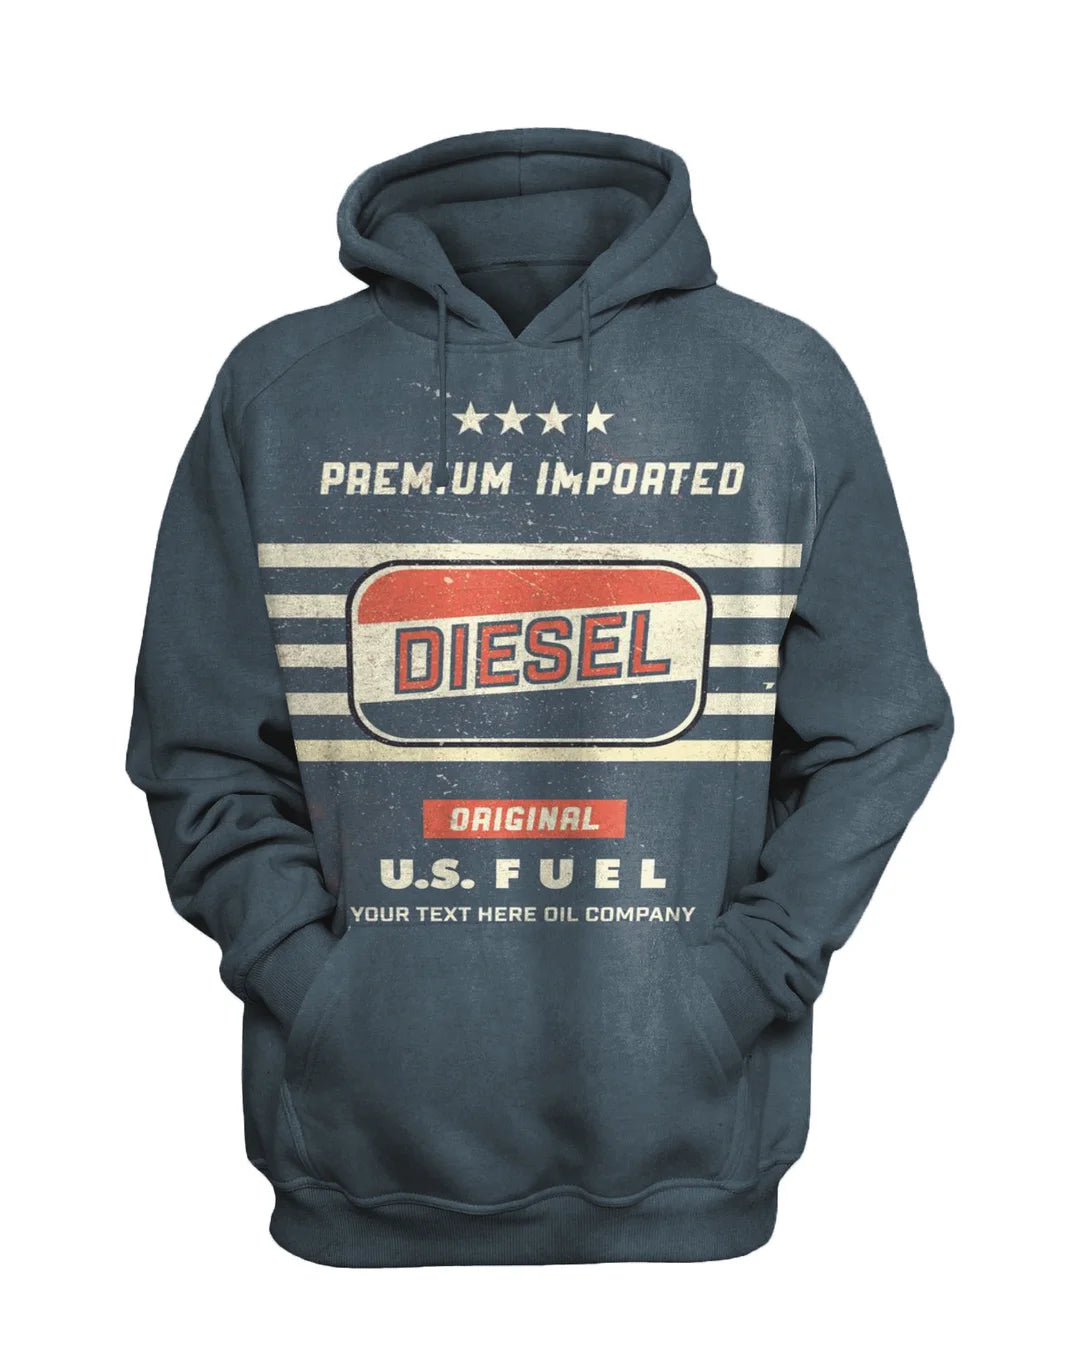 Mens Vintage Motor Oil Badge Printed Sweatshirt Set